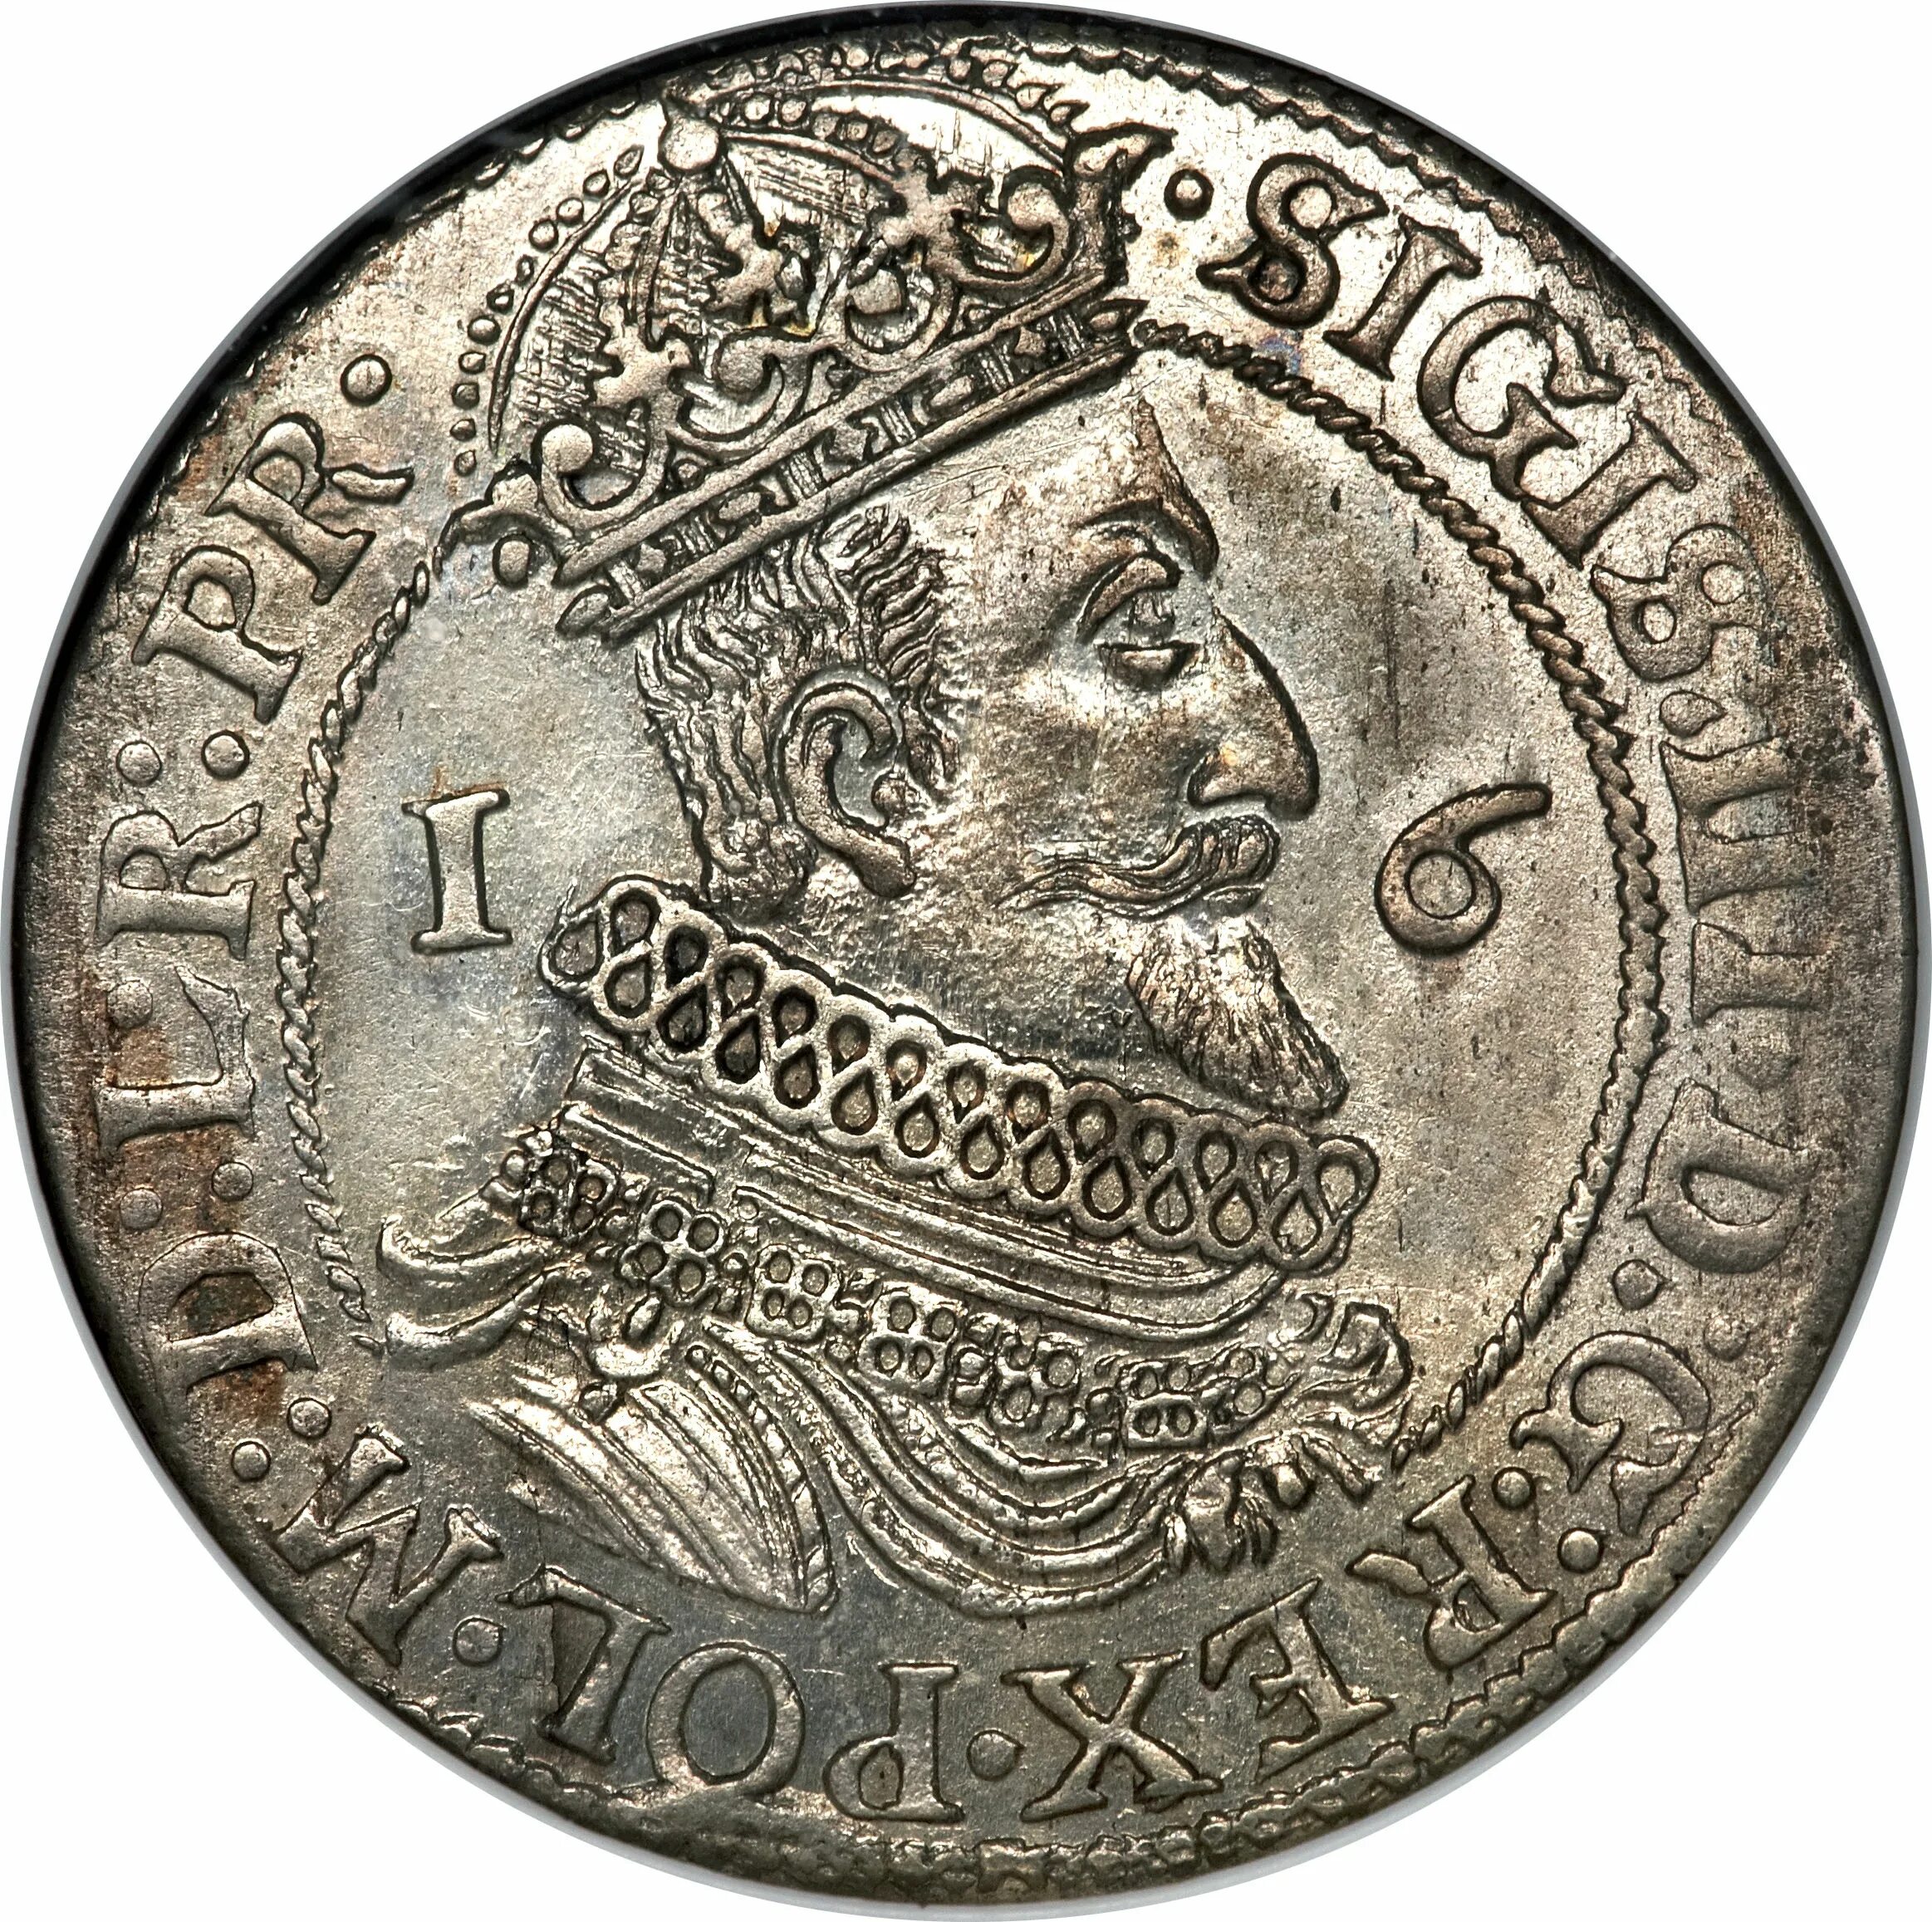 Монеты речи Посполитой. Монеты речи Посполитой Сигизмунд. Монеты речь Посполитая 1623. Полторак монета речи Посполитой. Монета речь посполита